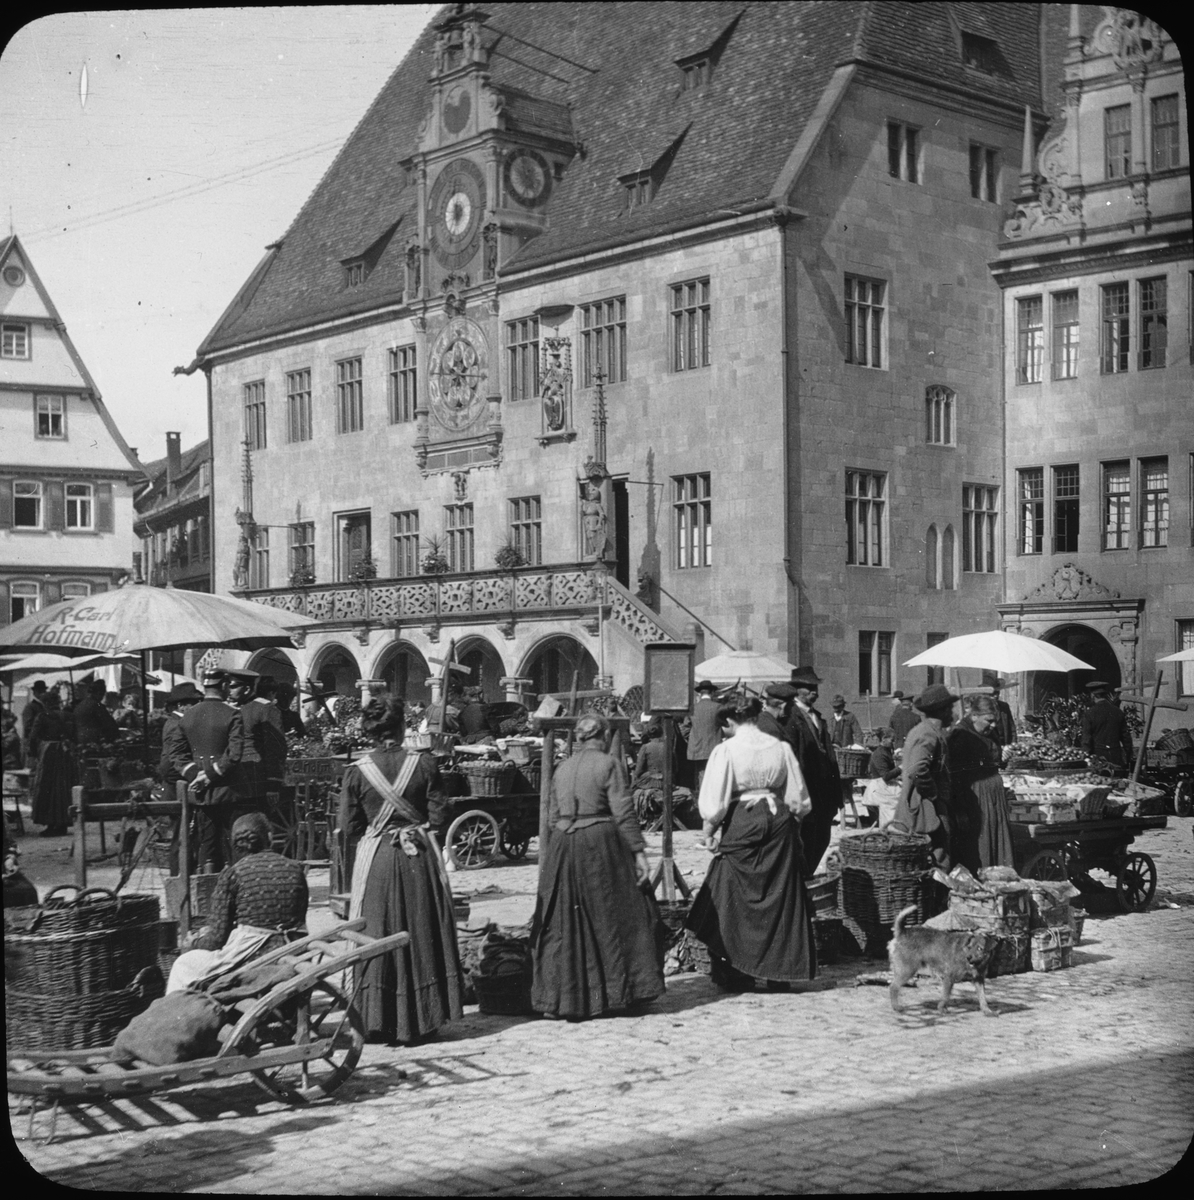 Skioptikonbild med motiv av marknad på torget framför rådhuset.
Bilden har förvarats i kartong märkt: Resan 1908. Heilbronn 7. XXII.